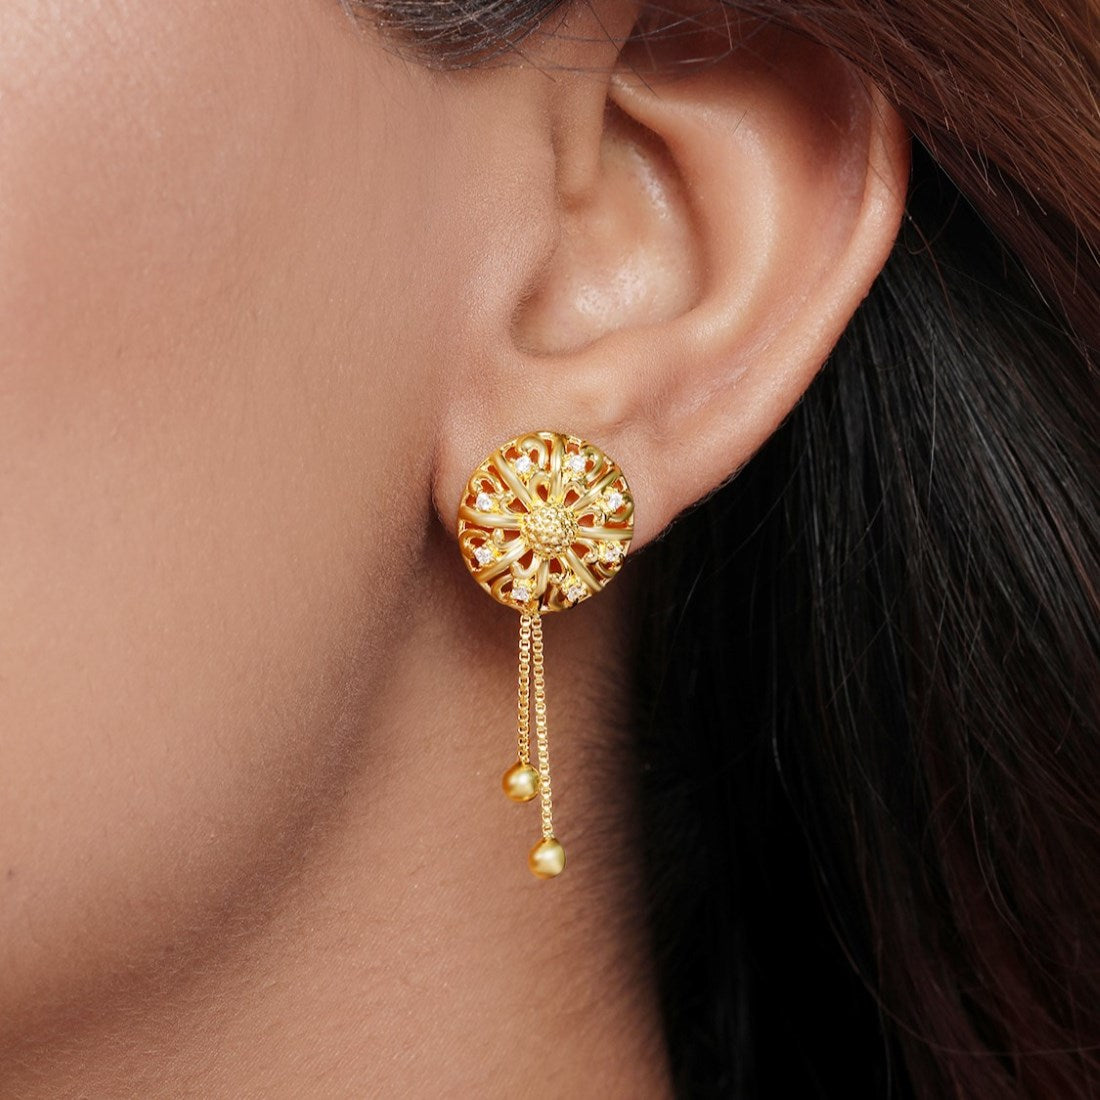 Golden Blossom Bloom 925 Sterling Silver Gold-Plated Flower Earrings